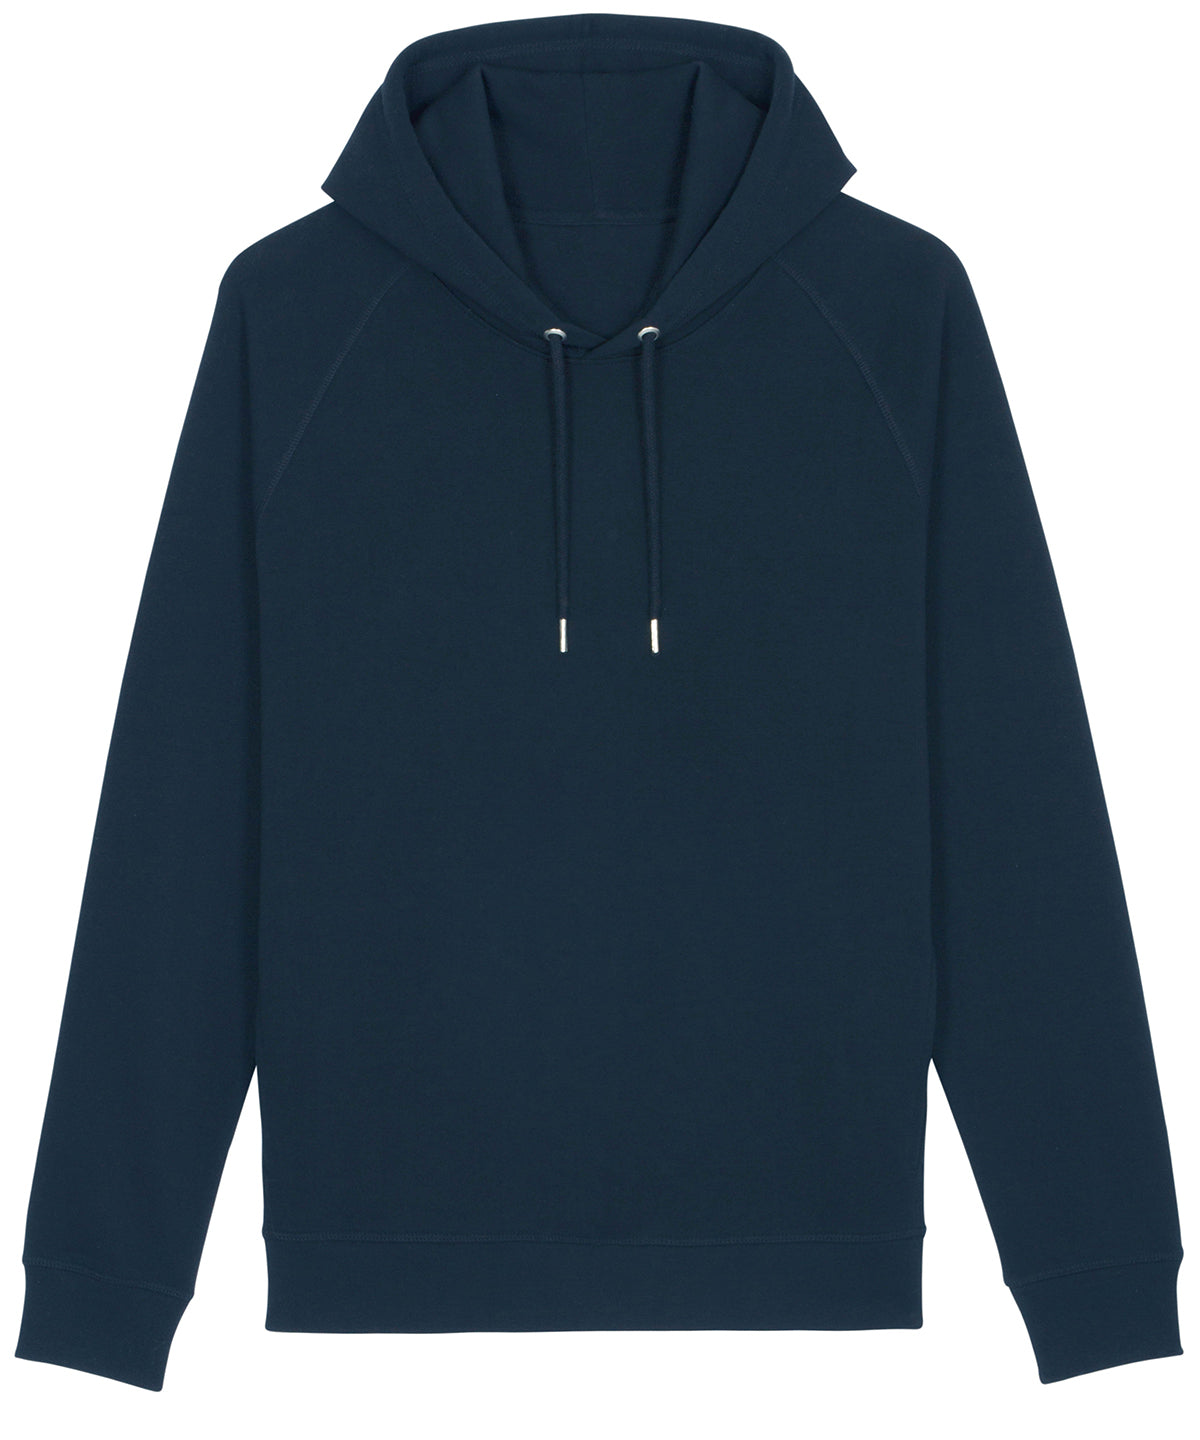 Personalised Hoodies - Black Stanley/Stella Sider unisex side pocket hoodie  (STSU824)